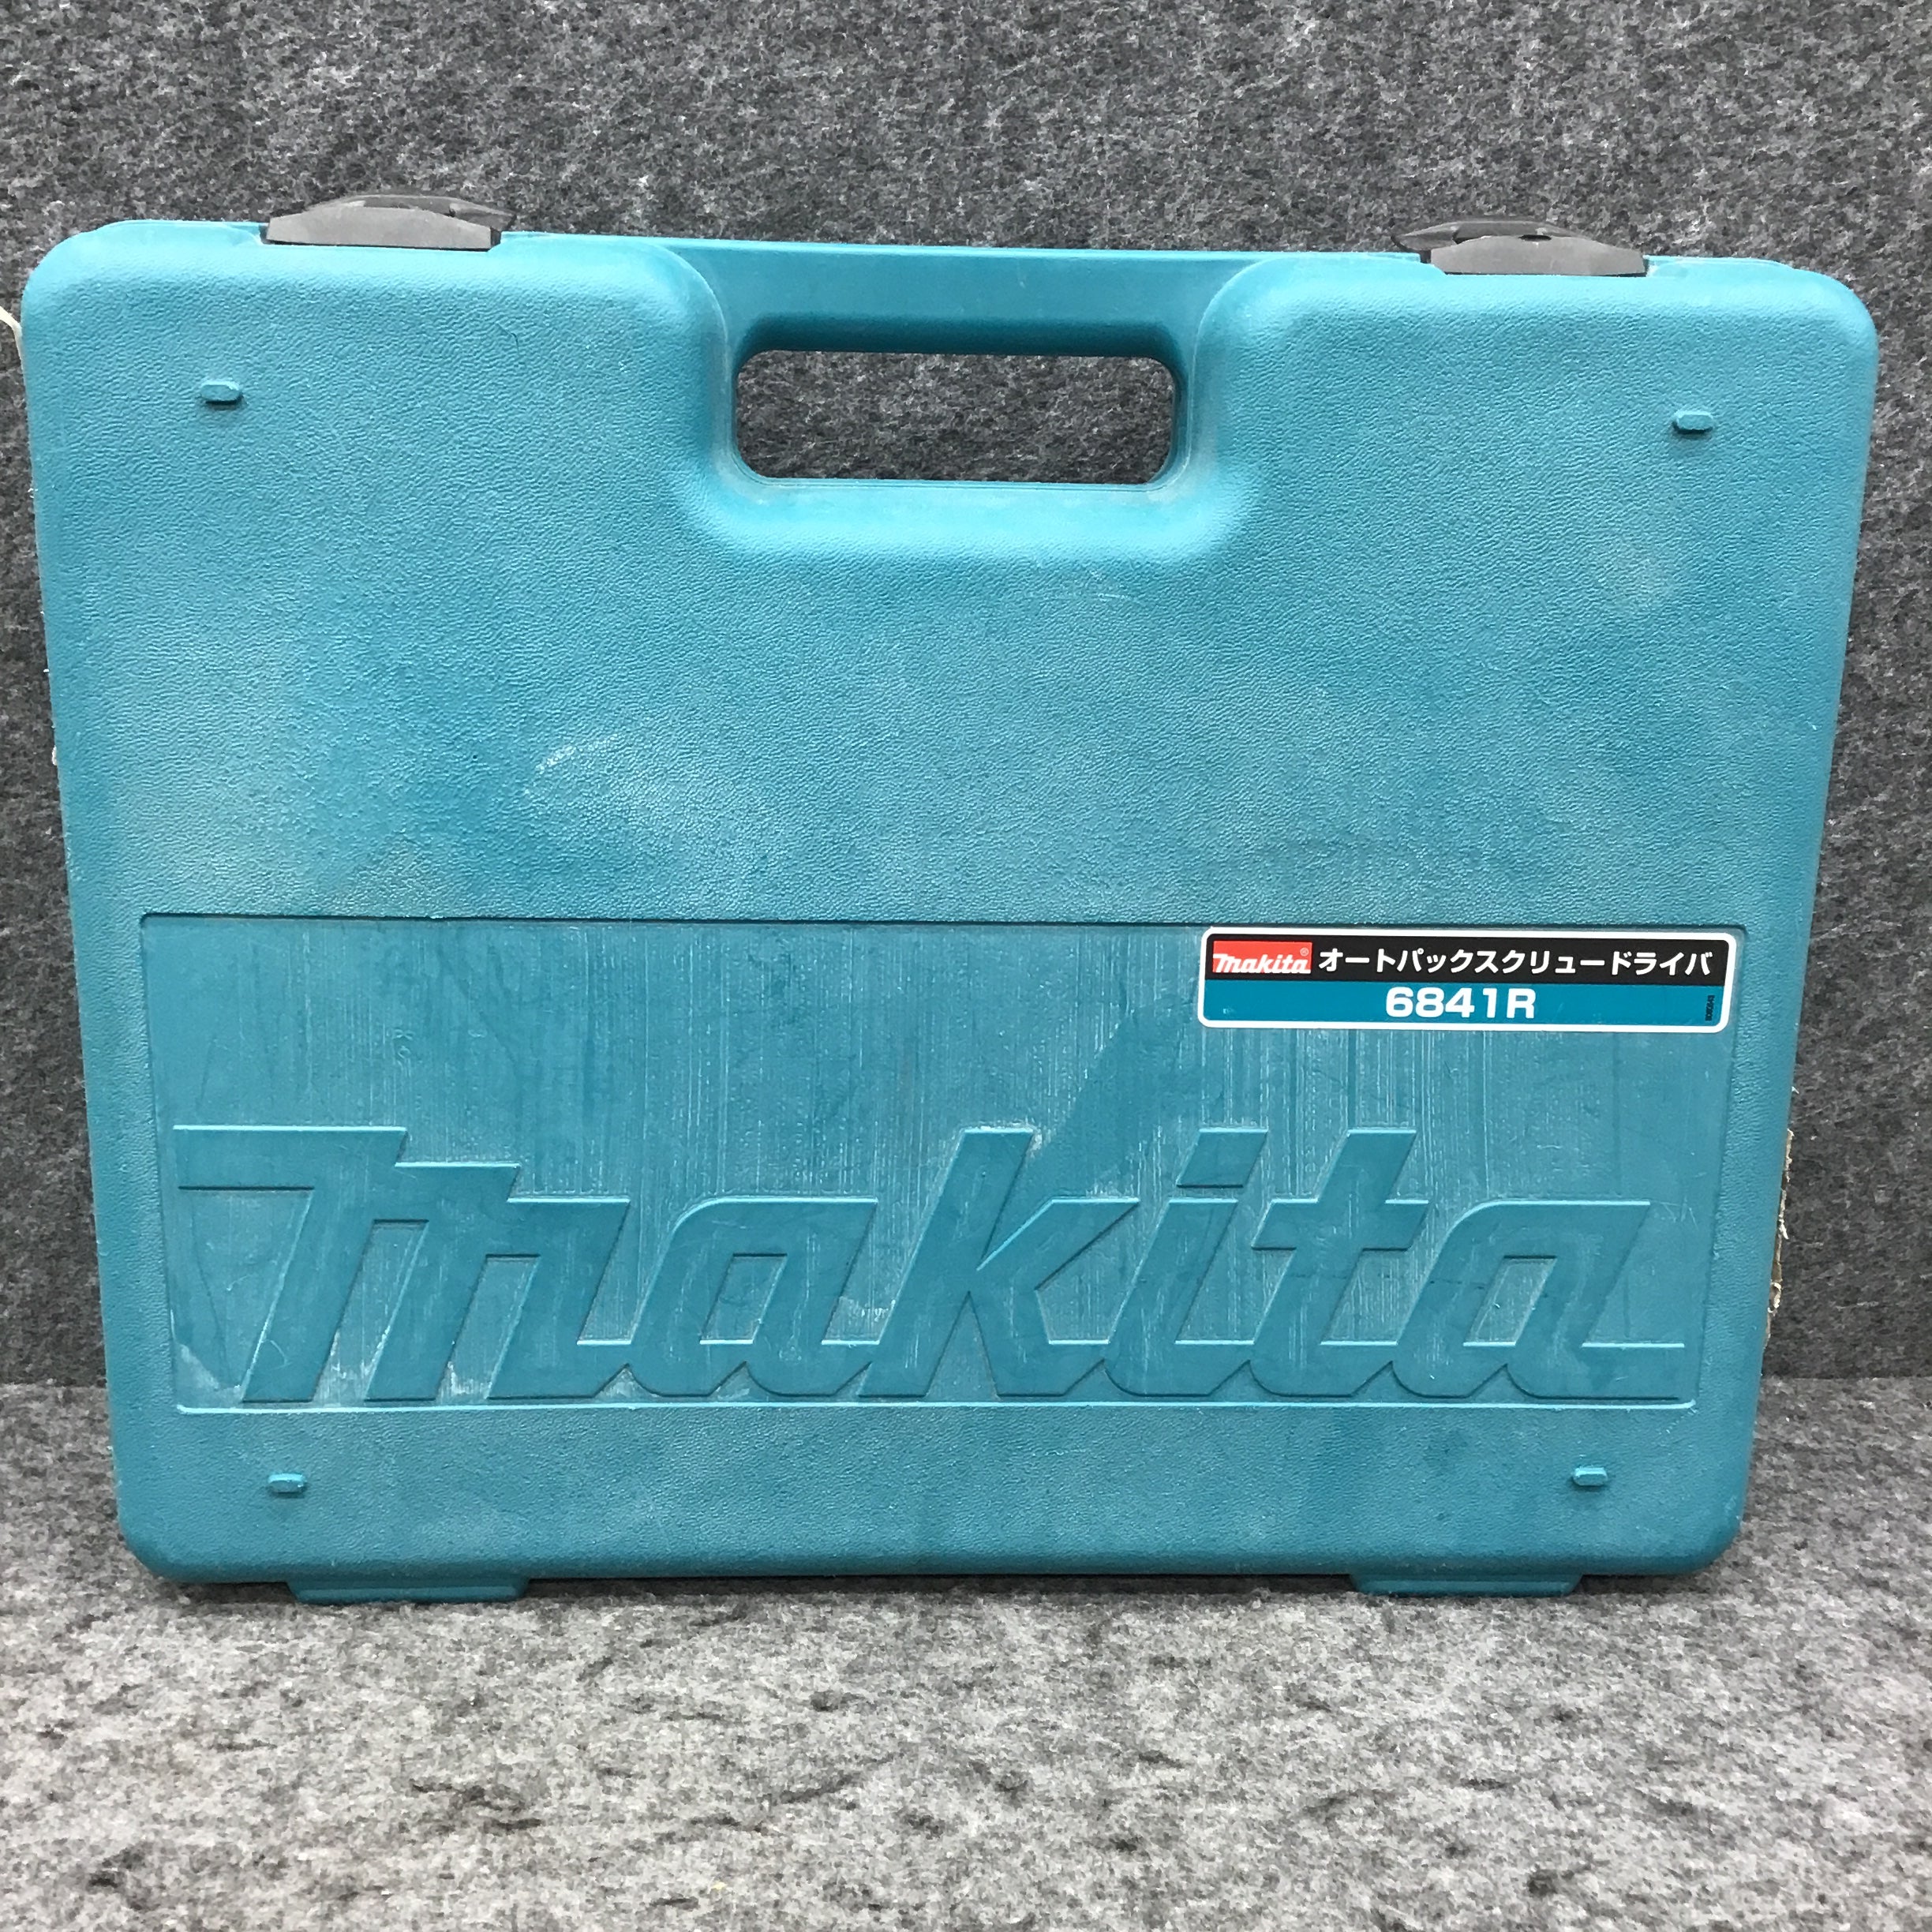 ☆マキタ(makita) オートパックスクリュードライバー 6841R【桶川店